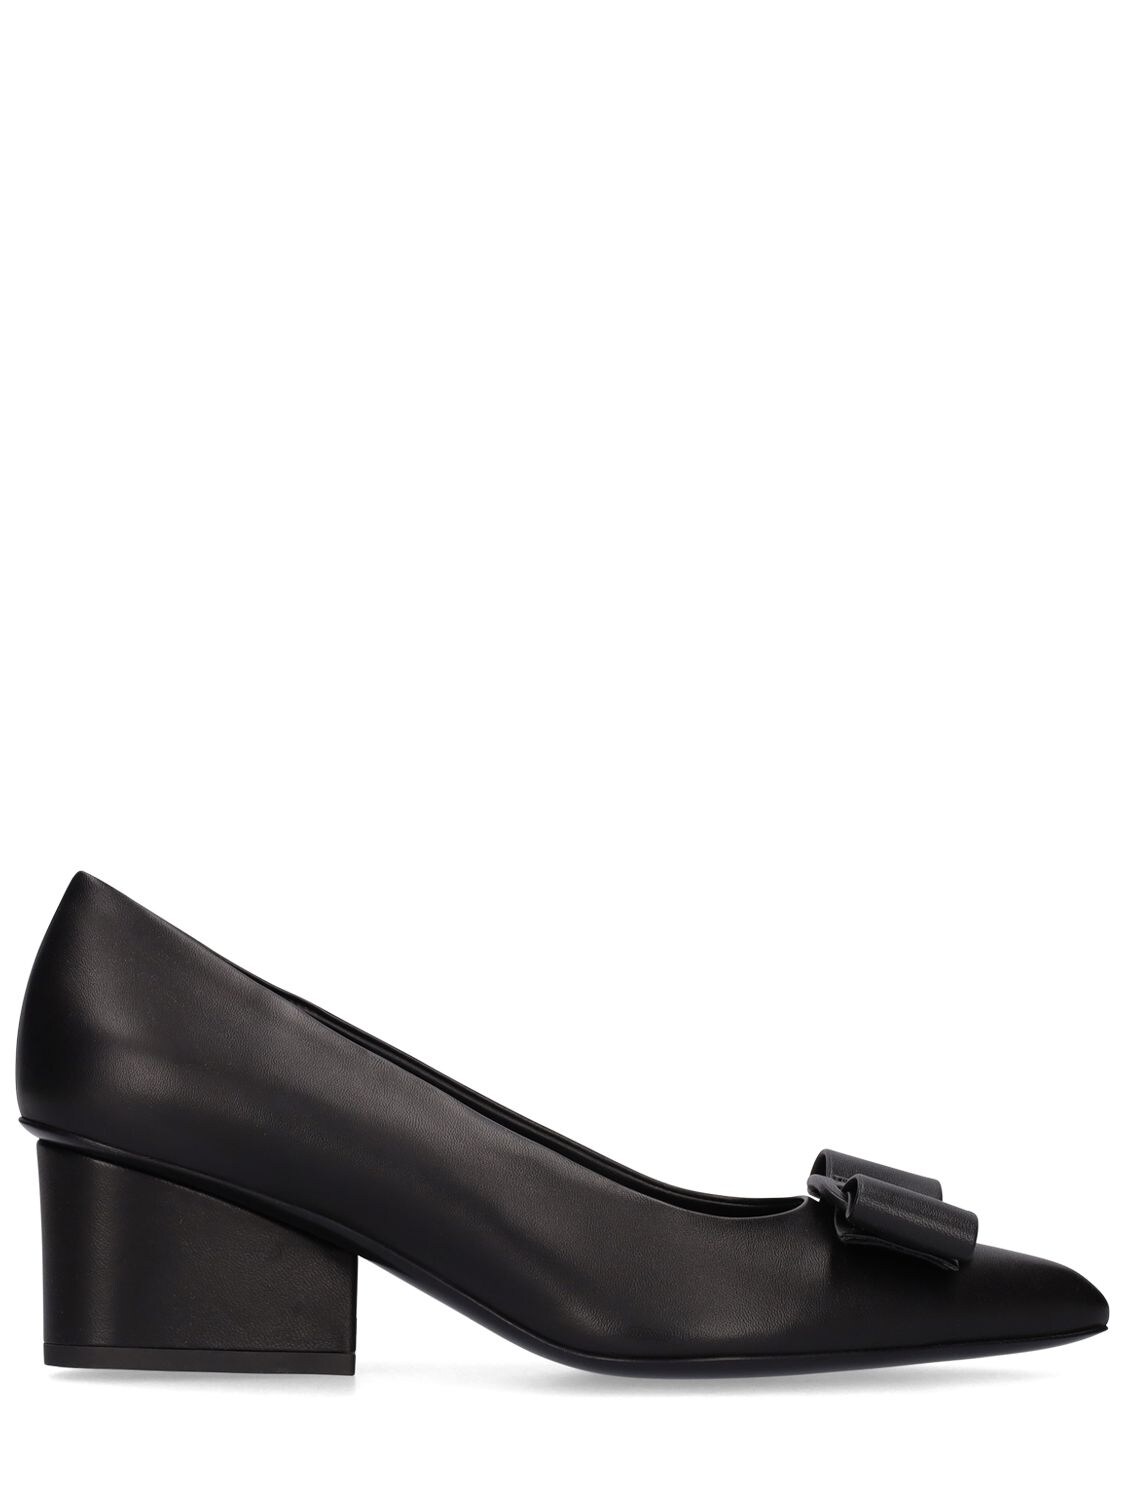 Ileen pumps Ferragamo en coloris Noir Femme Chaussures Chaussures à talons Escarpins 